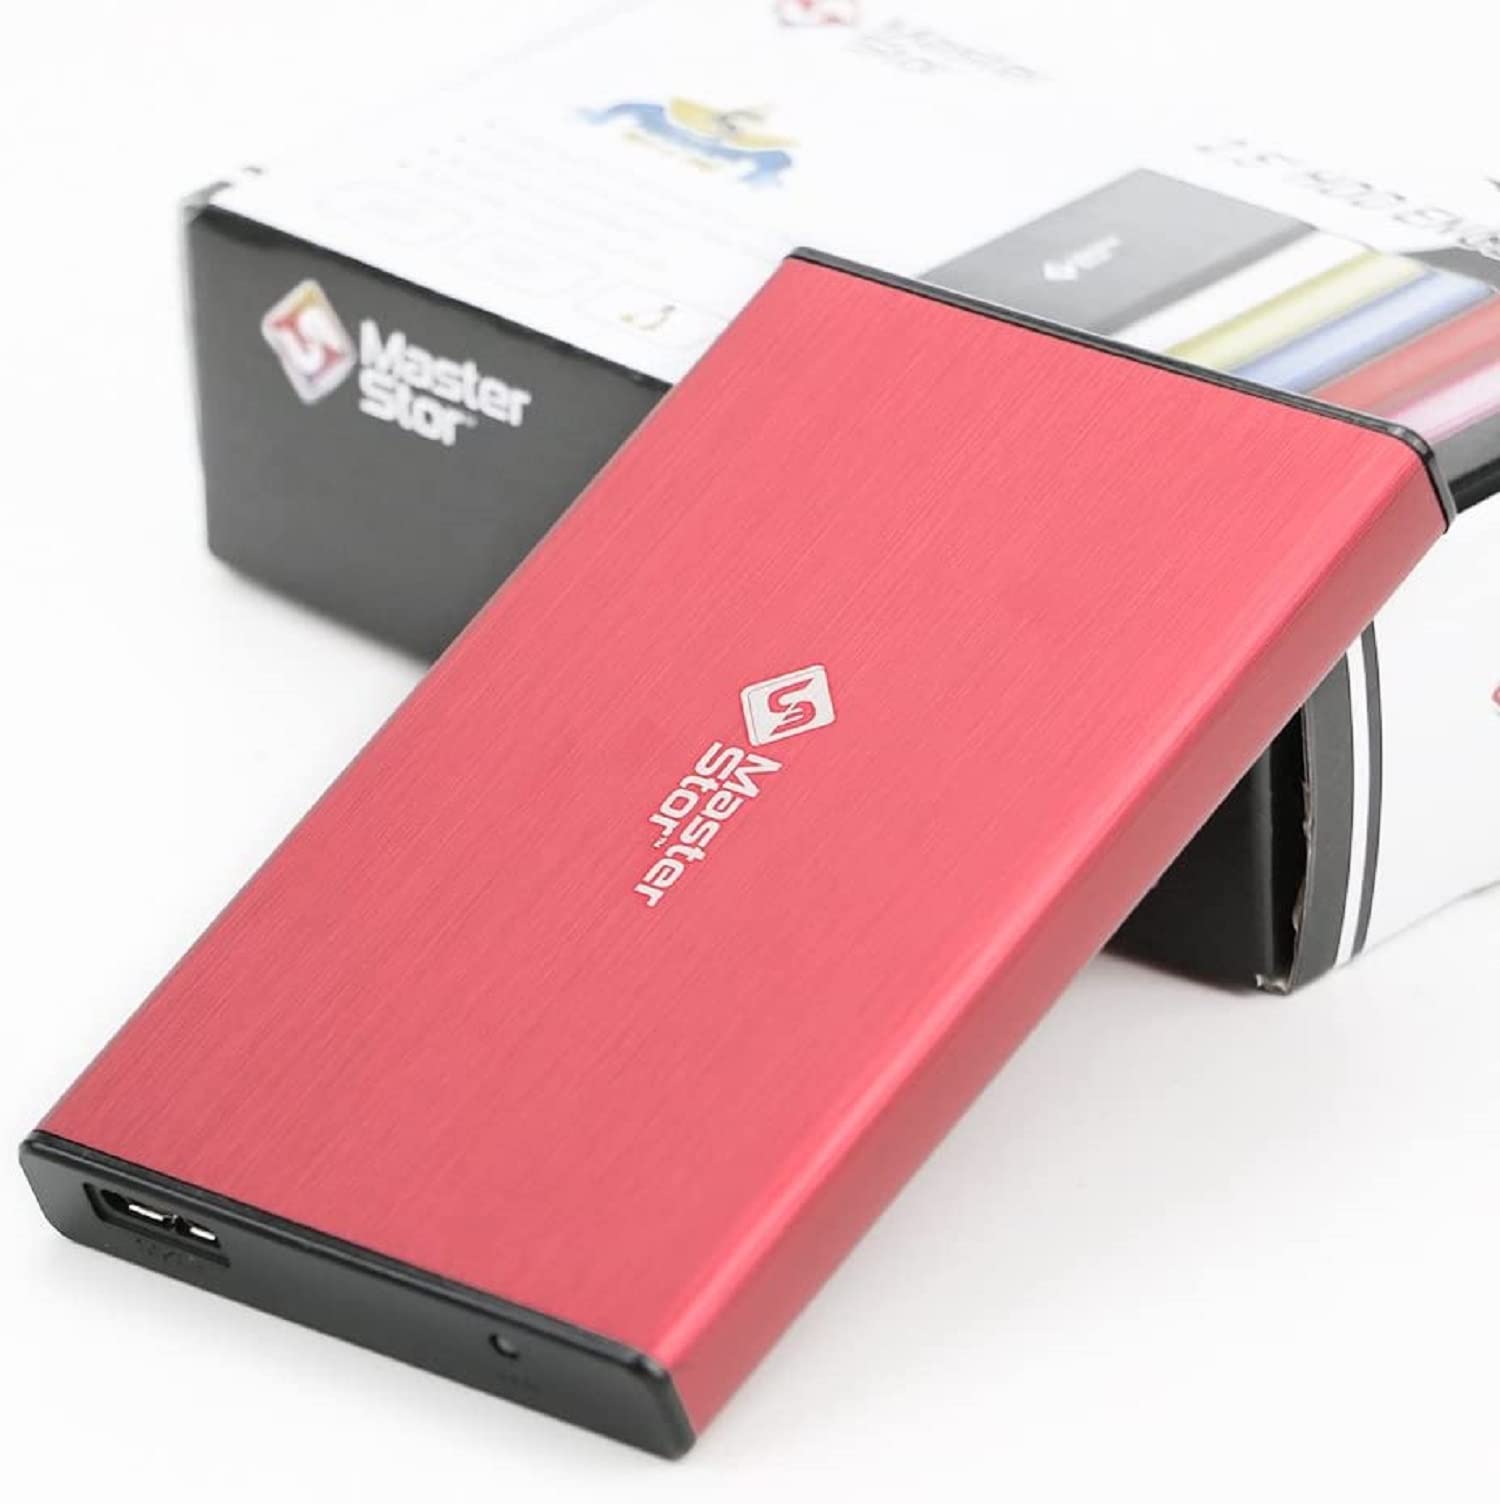 Peak Health MasterStorb Externe Festplatte, USB 3.0, superschnell, 6,3 cm (2,5 Zoll), SATA, tragbare Festplatte, Rot, Silber, Schwarz, Blau und Pink - 1TB